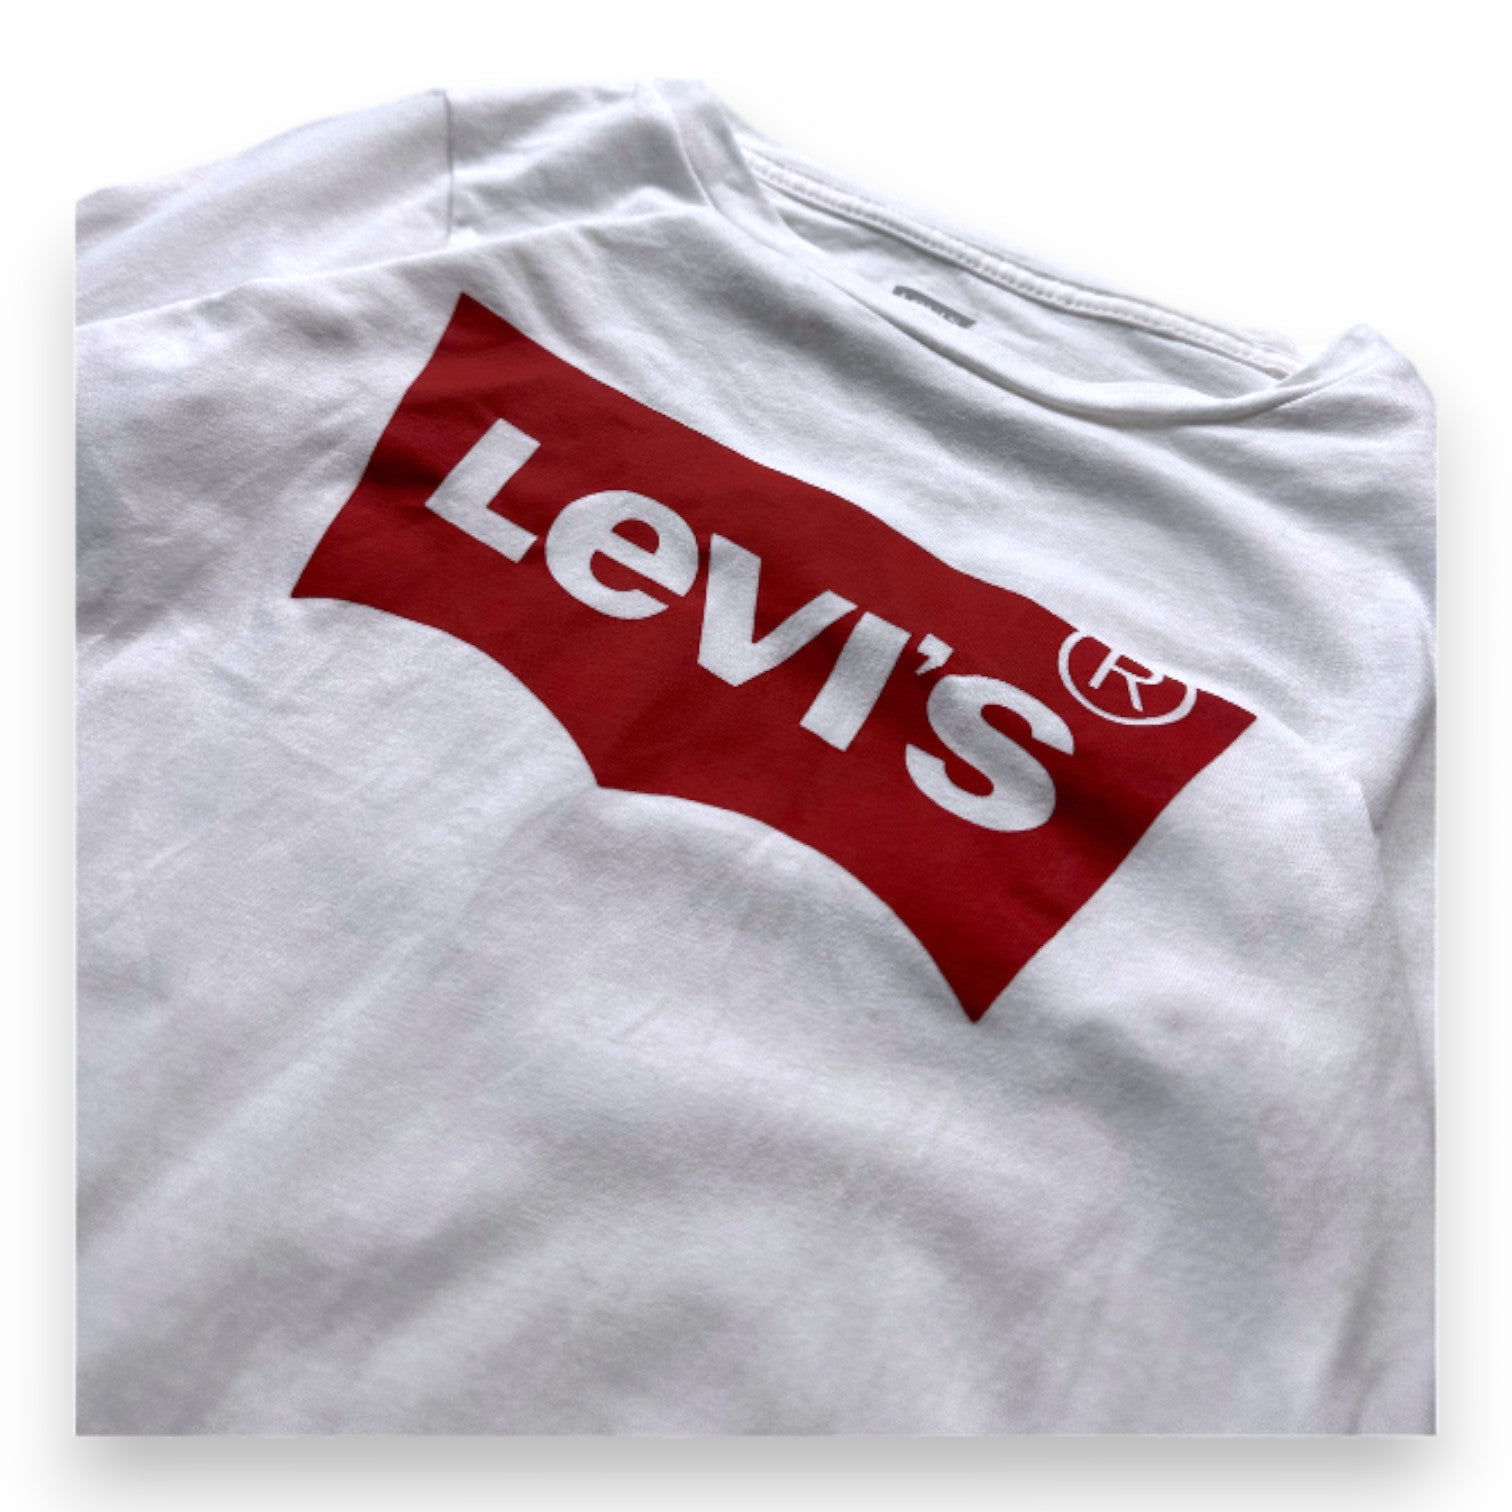 LEVI'S - T-shirt à manches longues blanc avec imprimé "Levi's" - 8 ans